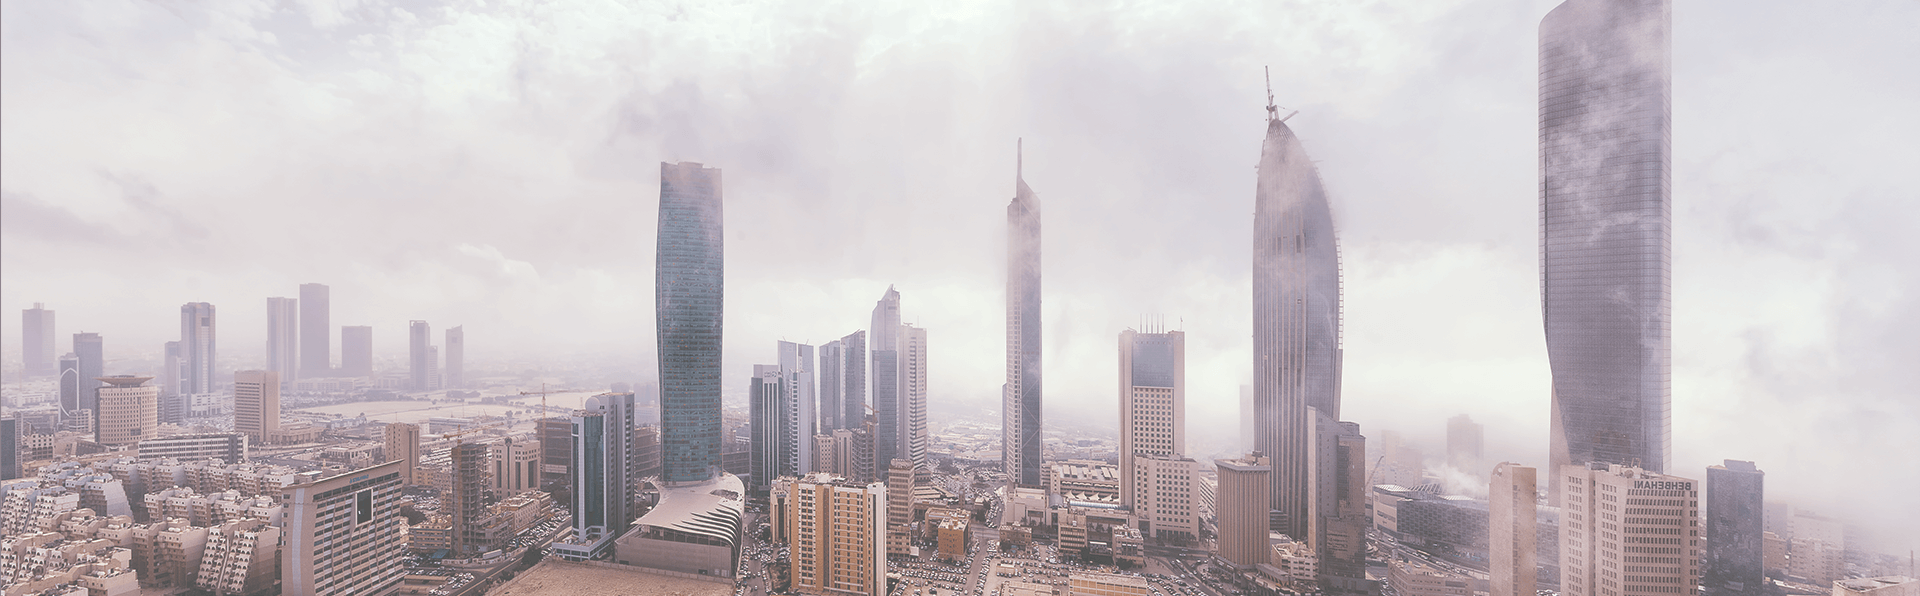 برج احمد السالم